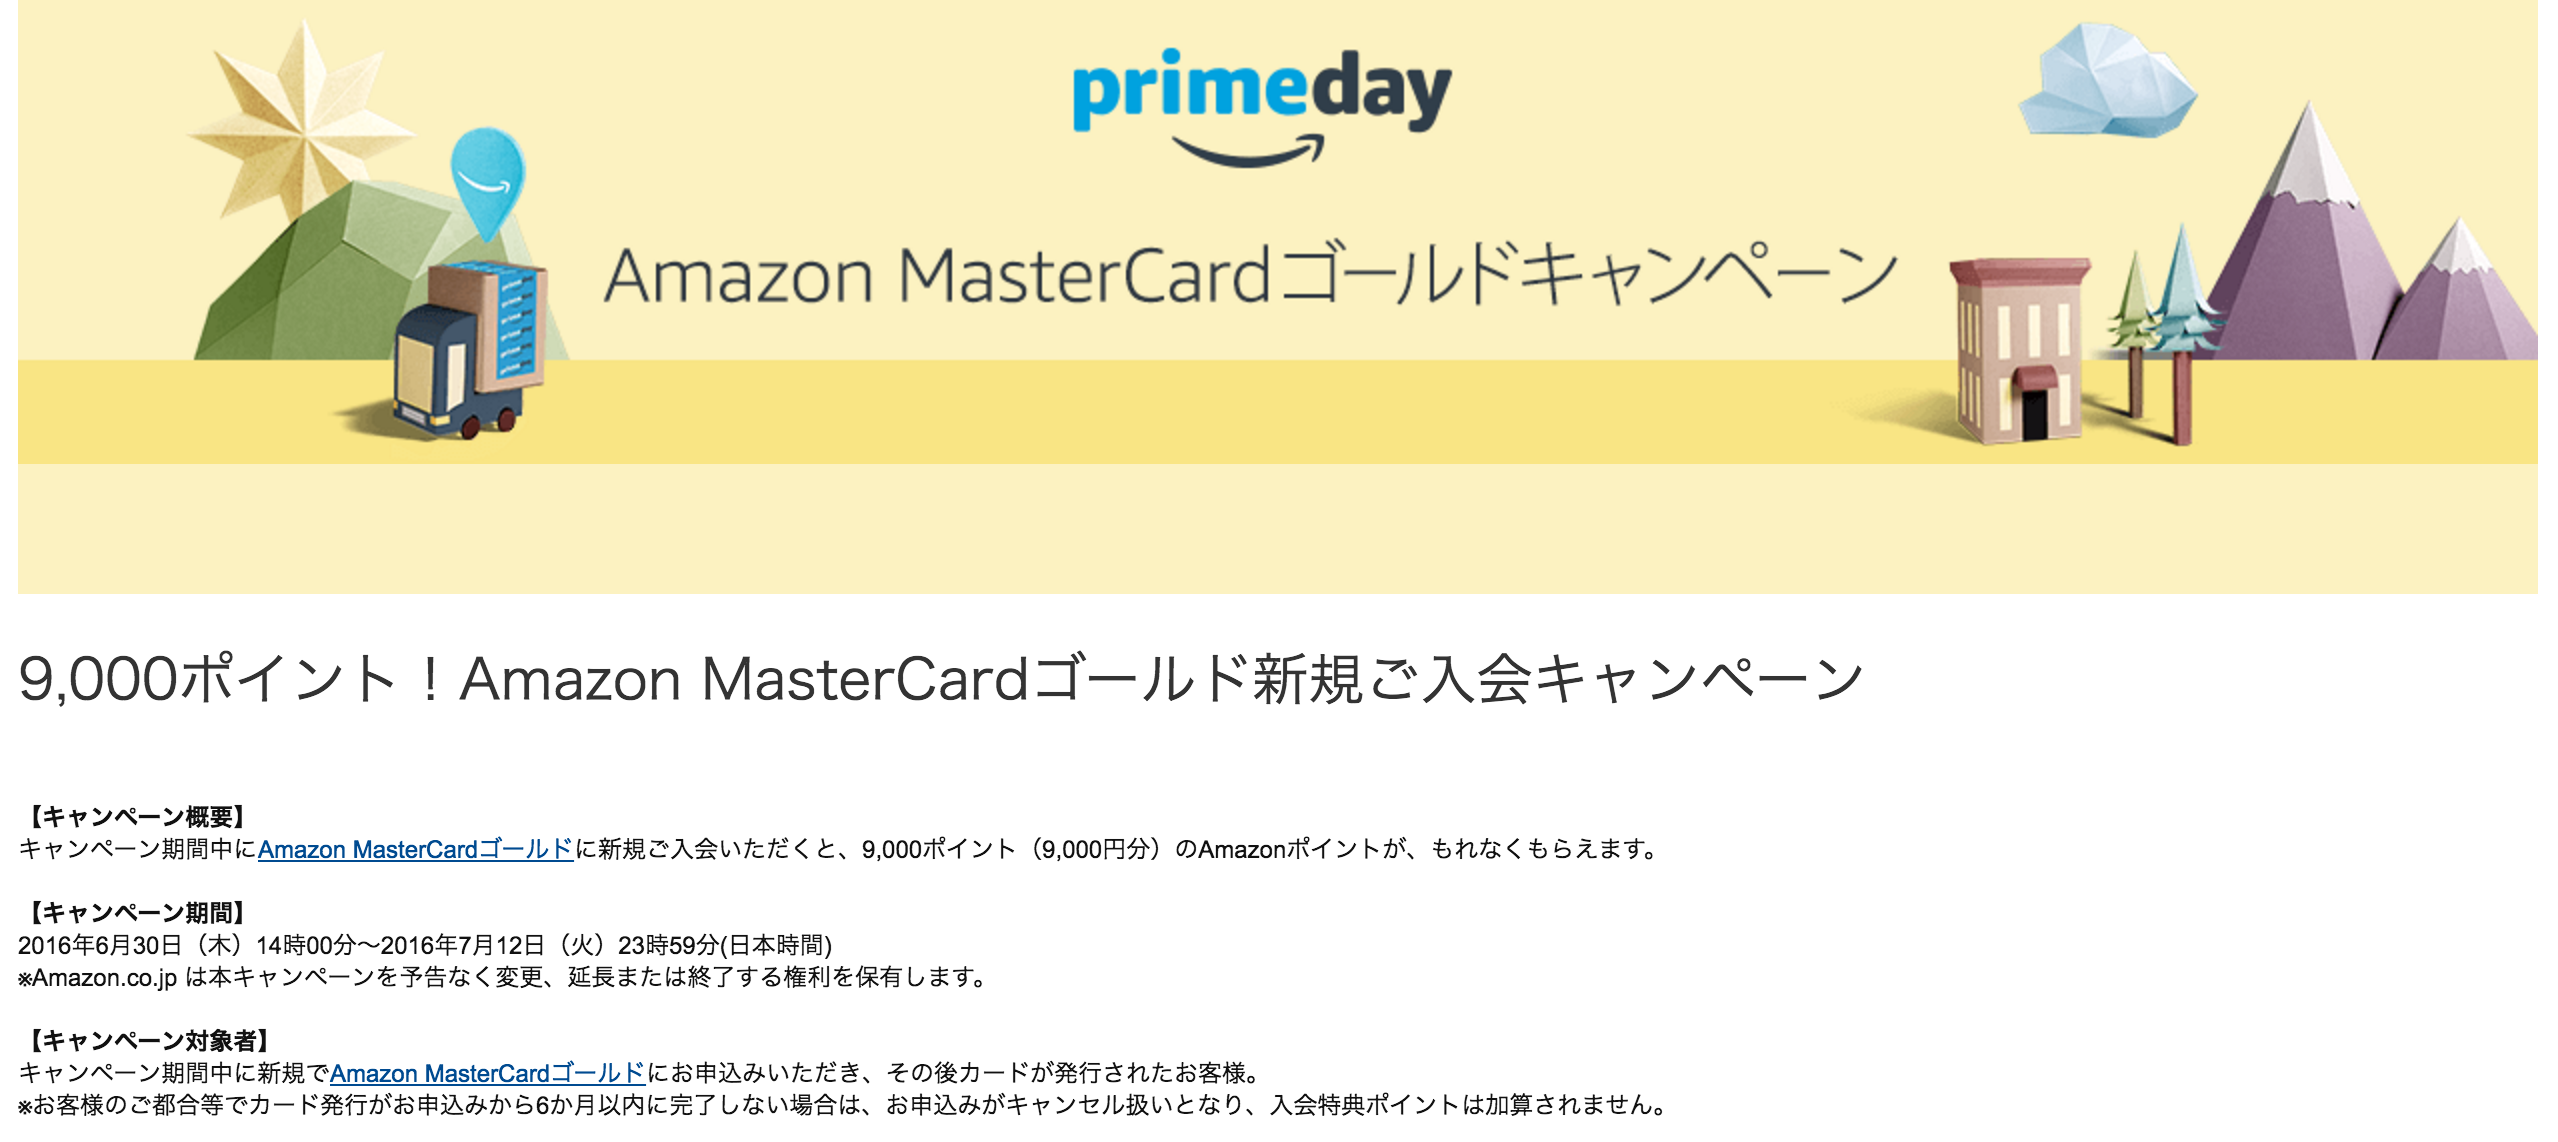 Amazonプライムデーまでの期間限定キャンペーン中に、Amazon MasterCardゴールドの申込をしました